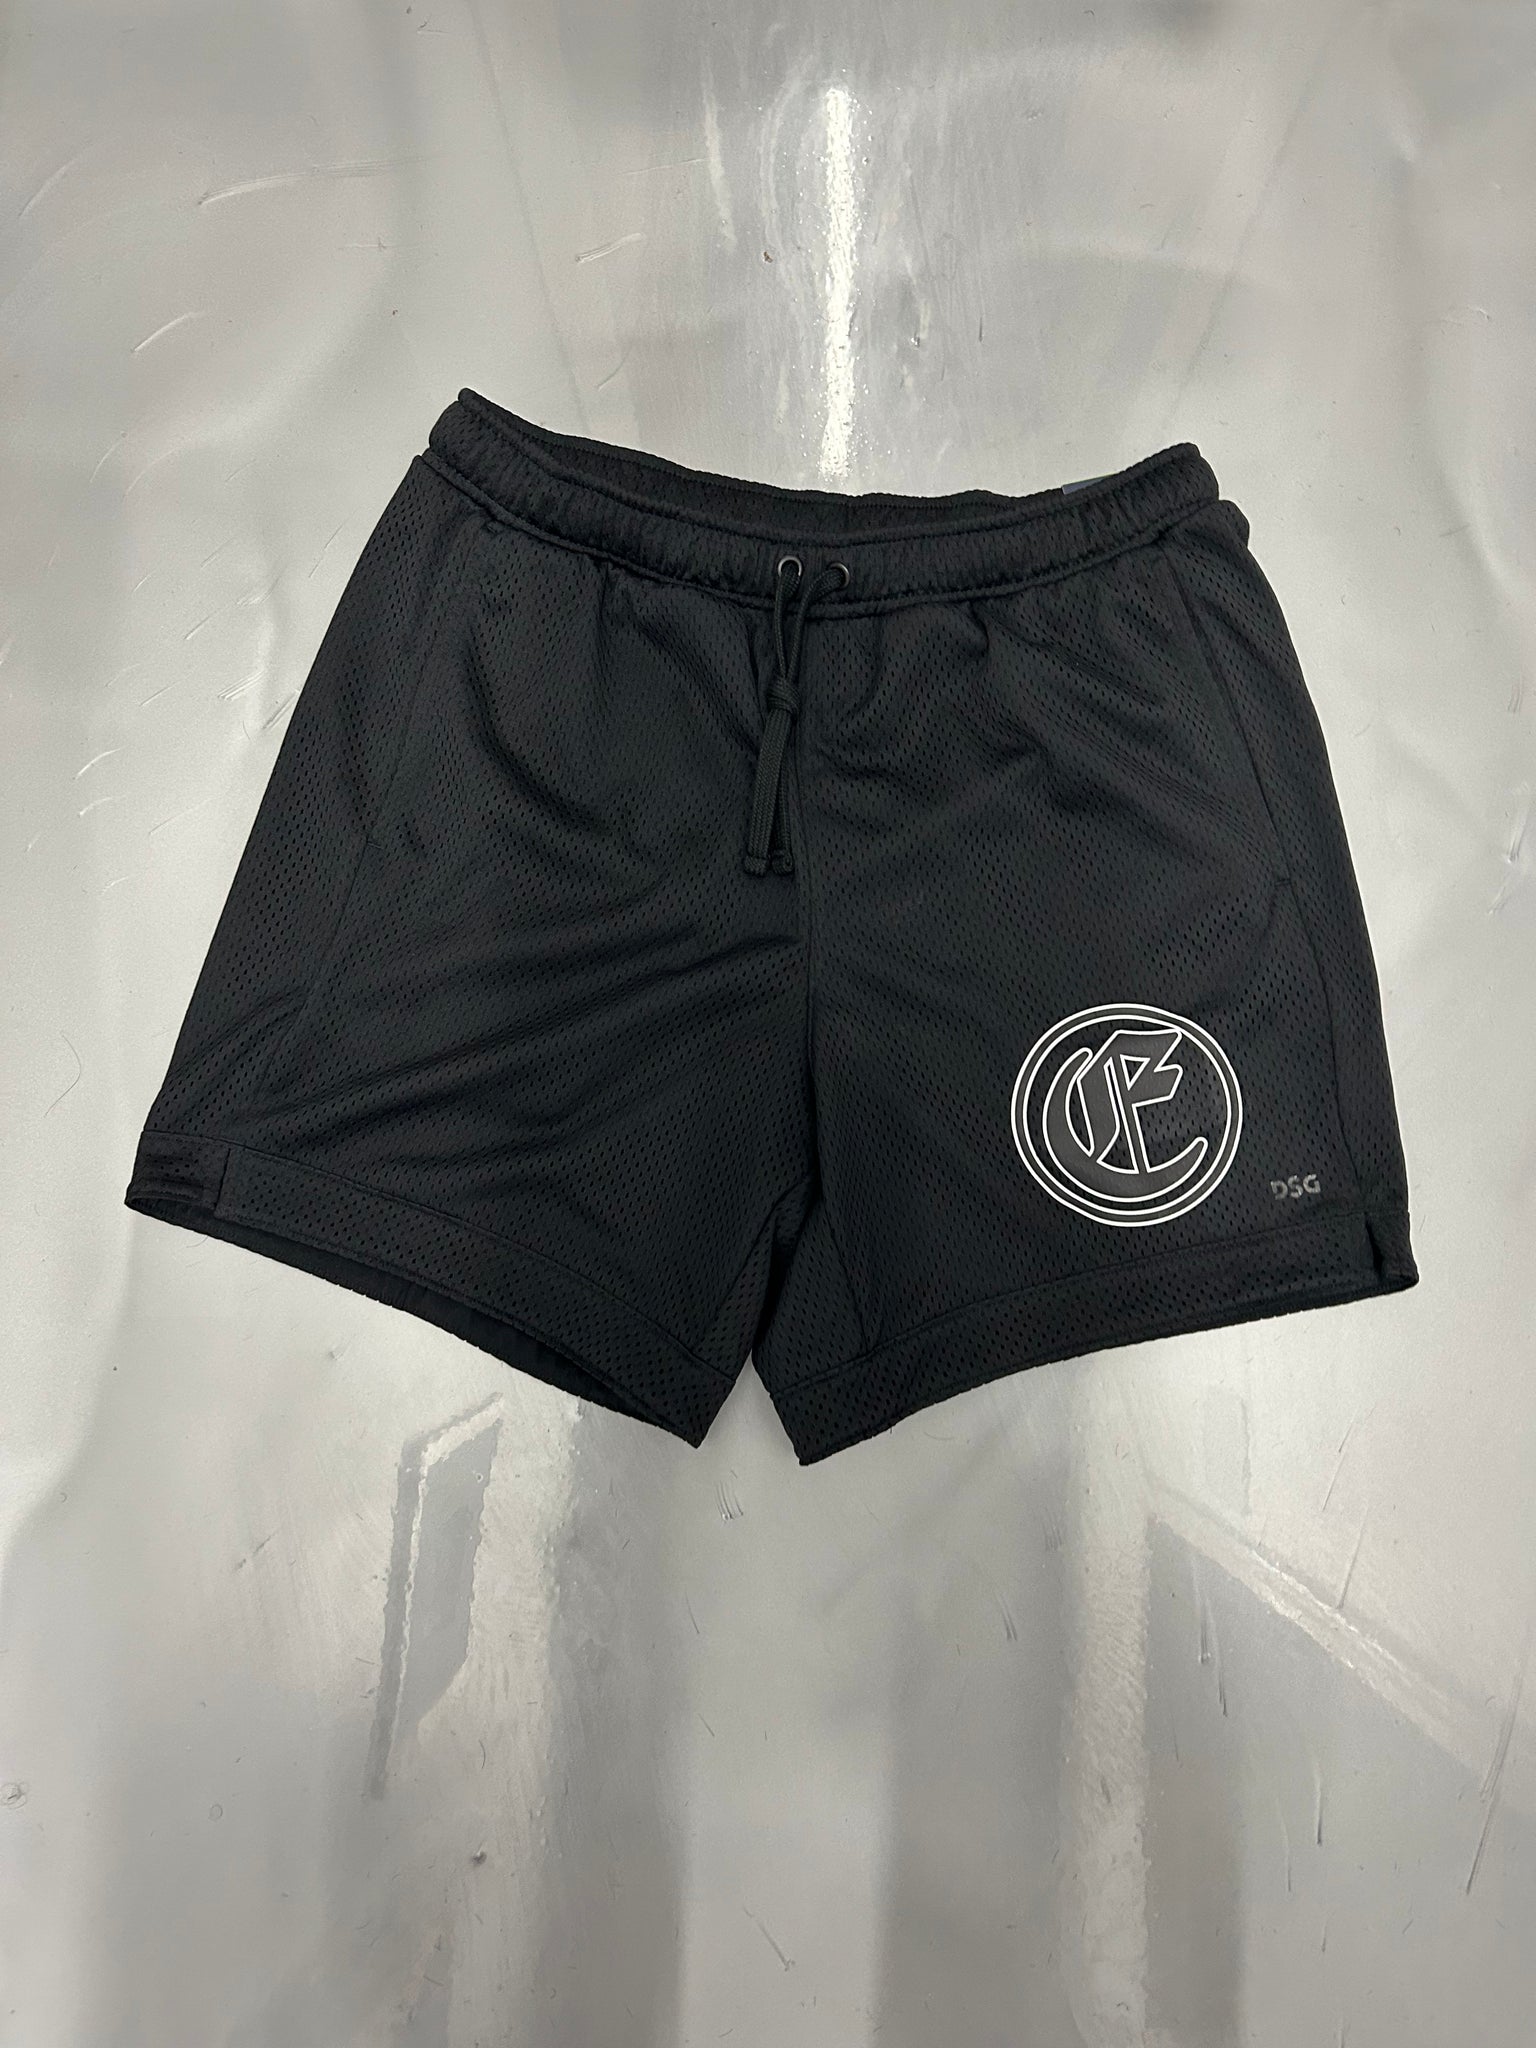 Empire x DSG 6” shorts